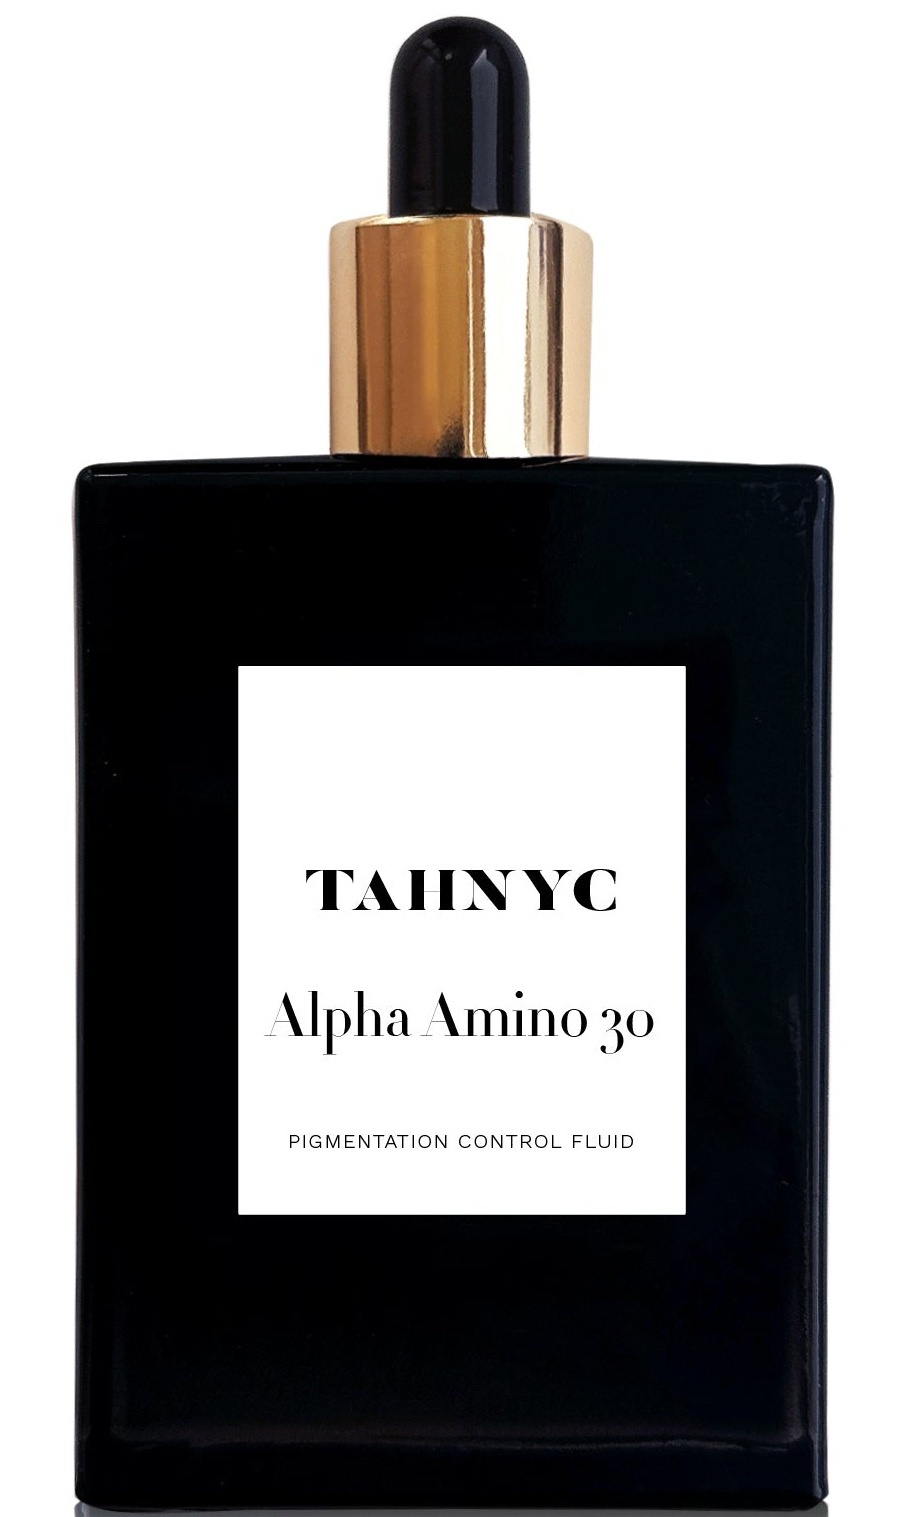 TAHNYC Alpha Amino 30